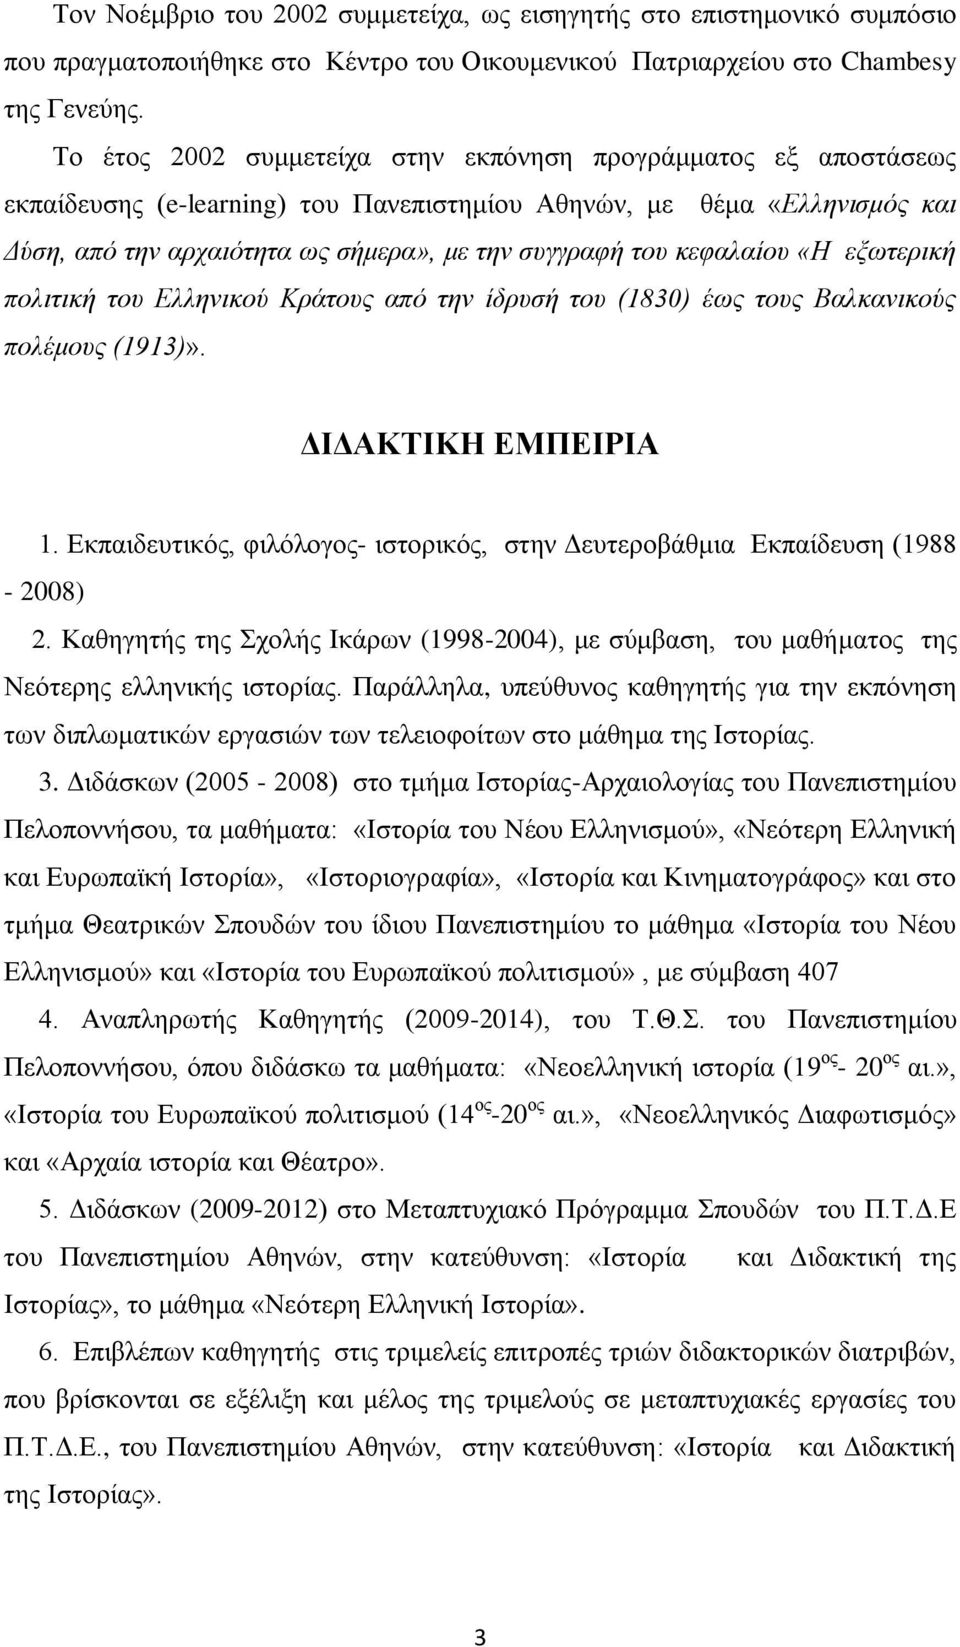 κεφαλαίου «Η εξωτερική πολιτική του Ελληνικού Κράτους από την ίδρυσή του (1830) έως τους Βαλκανικούς πολέμους (1913)». ΔΙΔΑΚΤΙΚΗ ΕΜΠΕΙΡΙΑ 1.